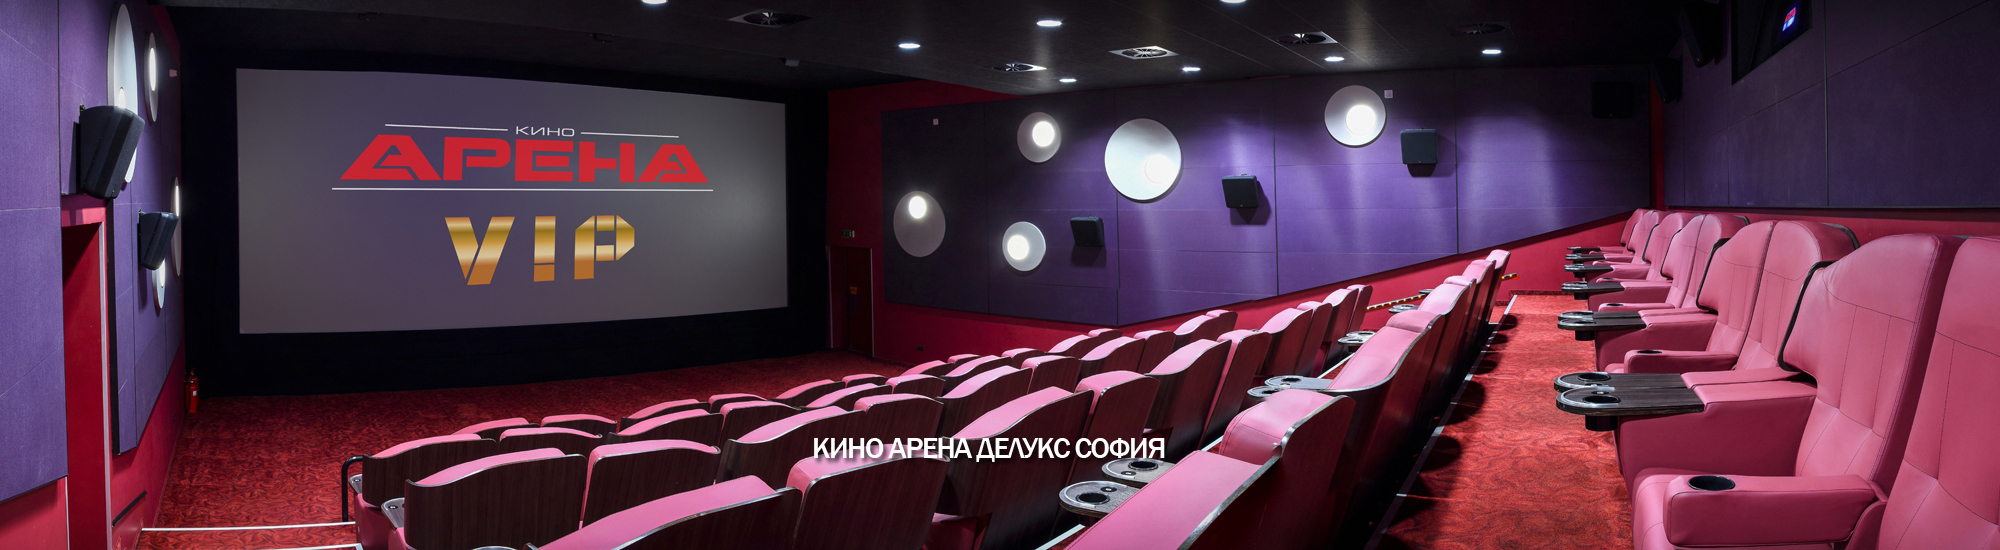 Тц арена кинотеатр